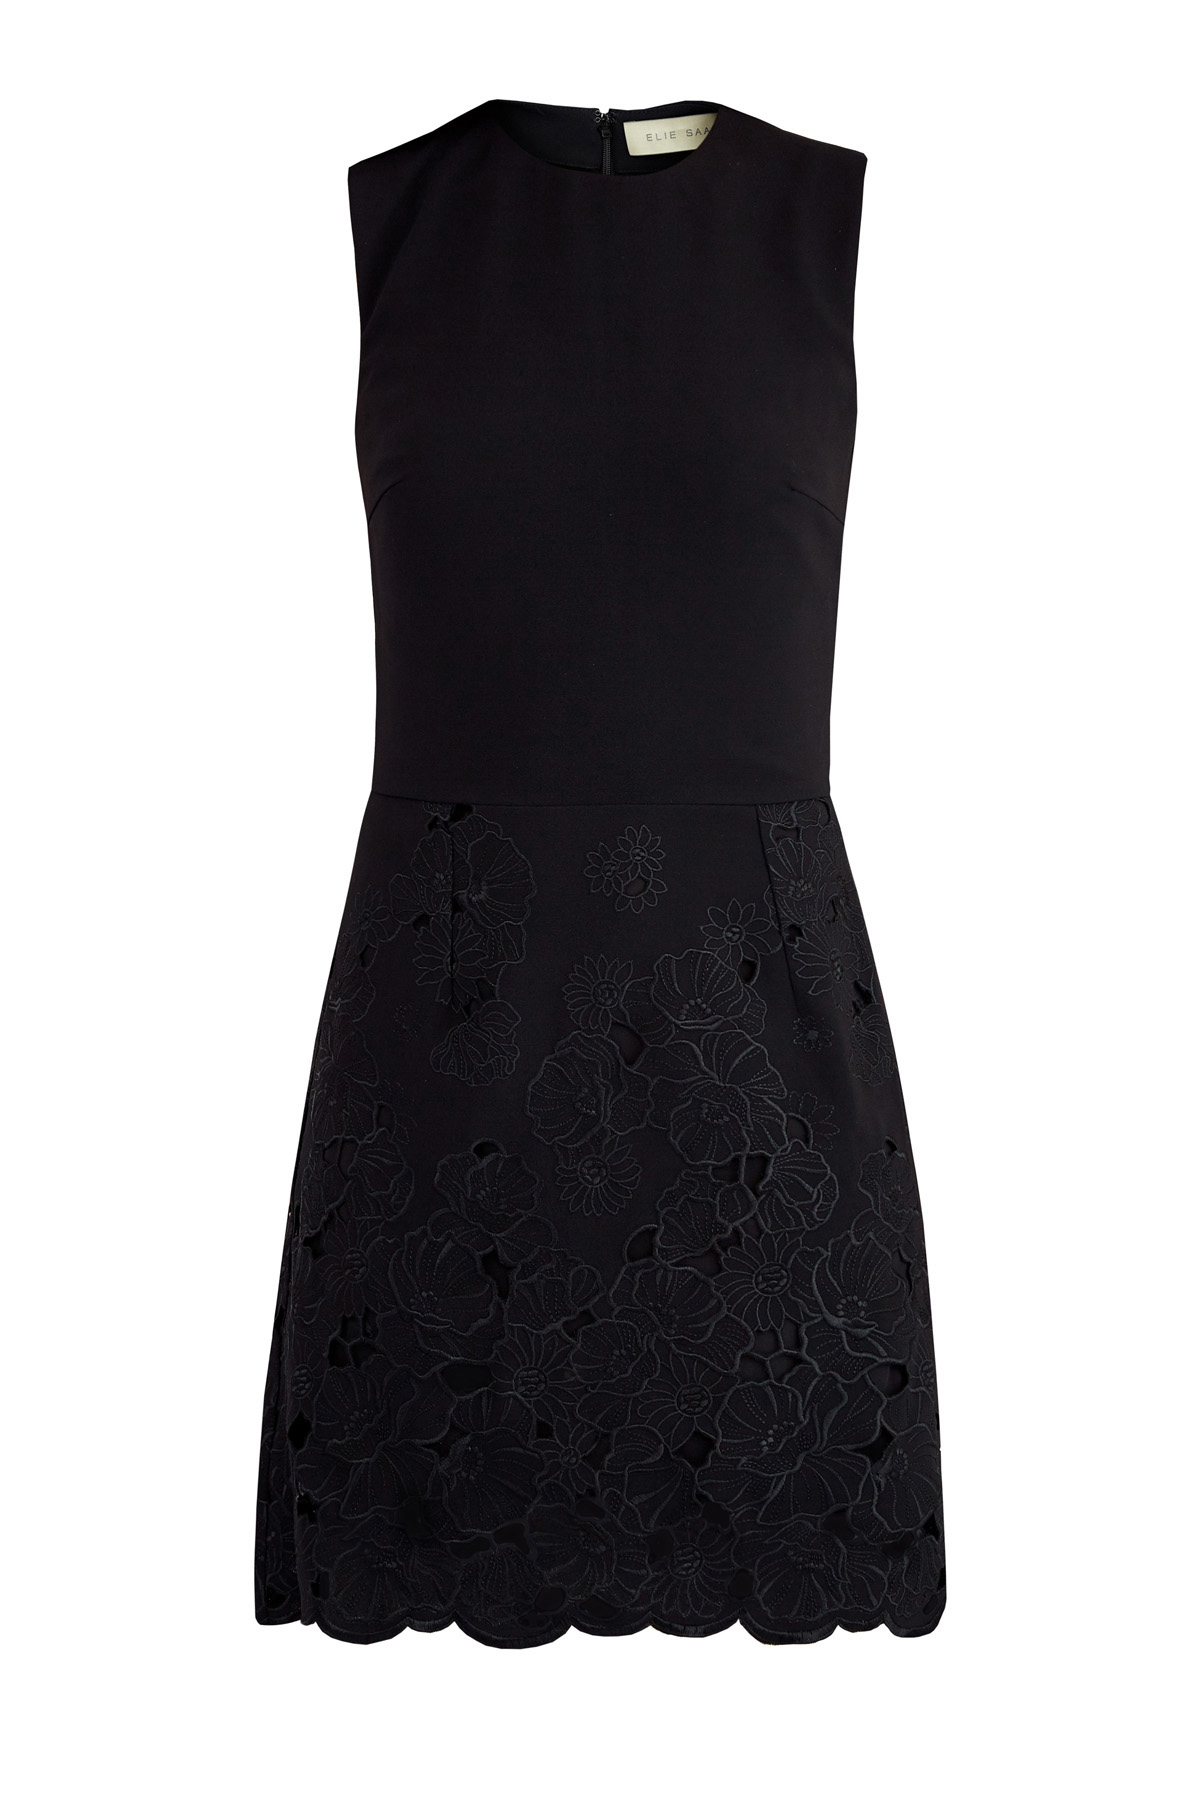 Черное платье мини с перфорацией верхнего слоя и цветочным узором